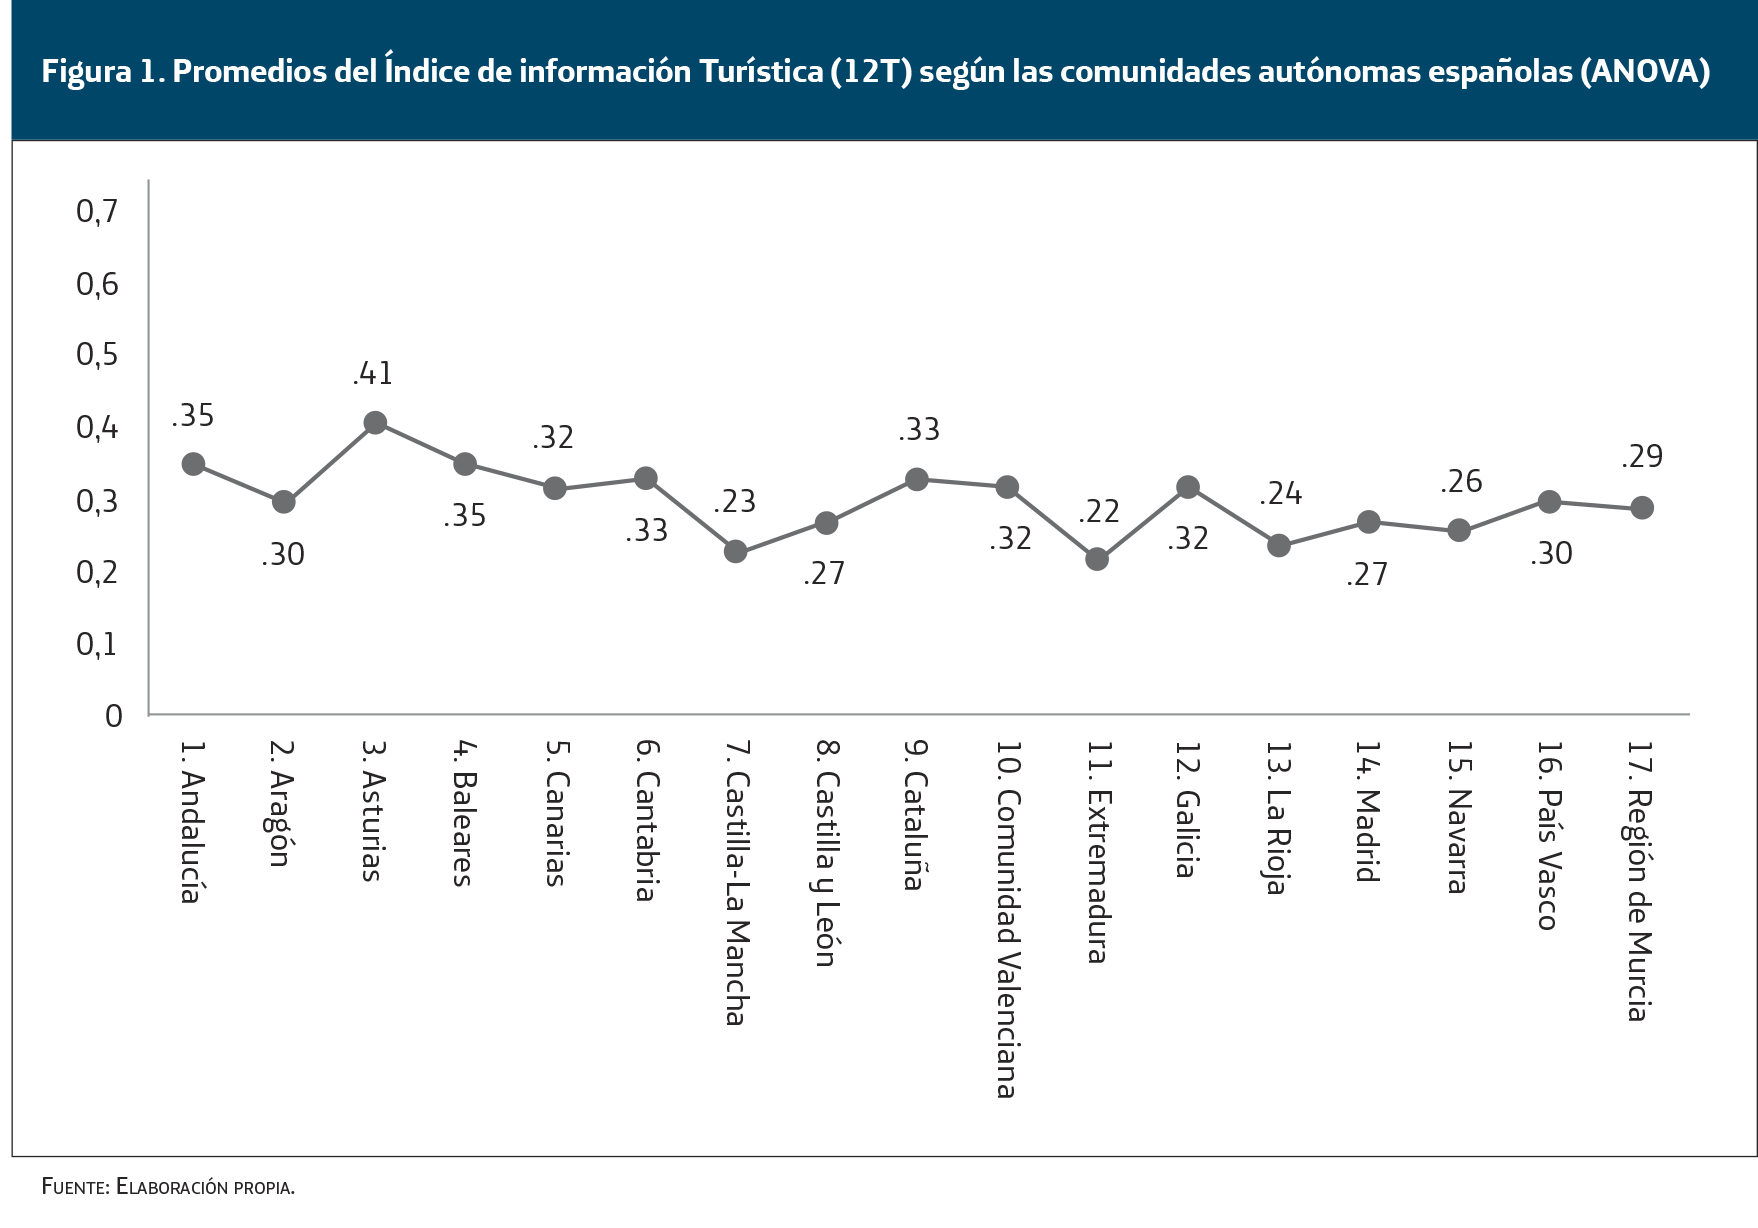 promedios del índice de información turística según las comunidades autónomas españolas ANOVA